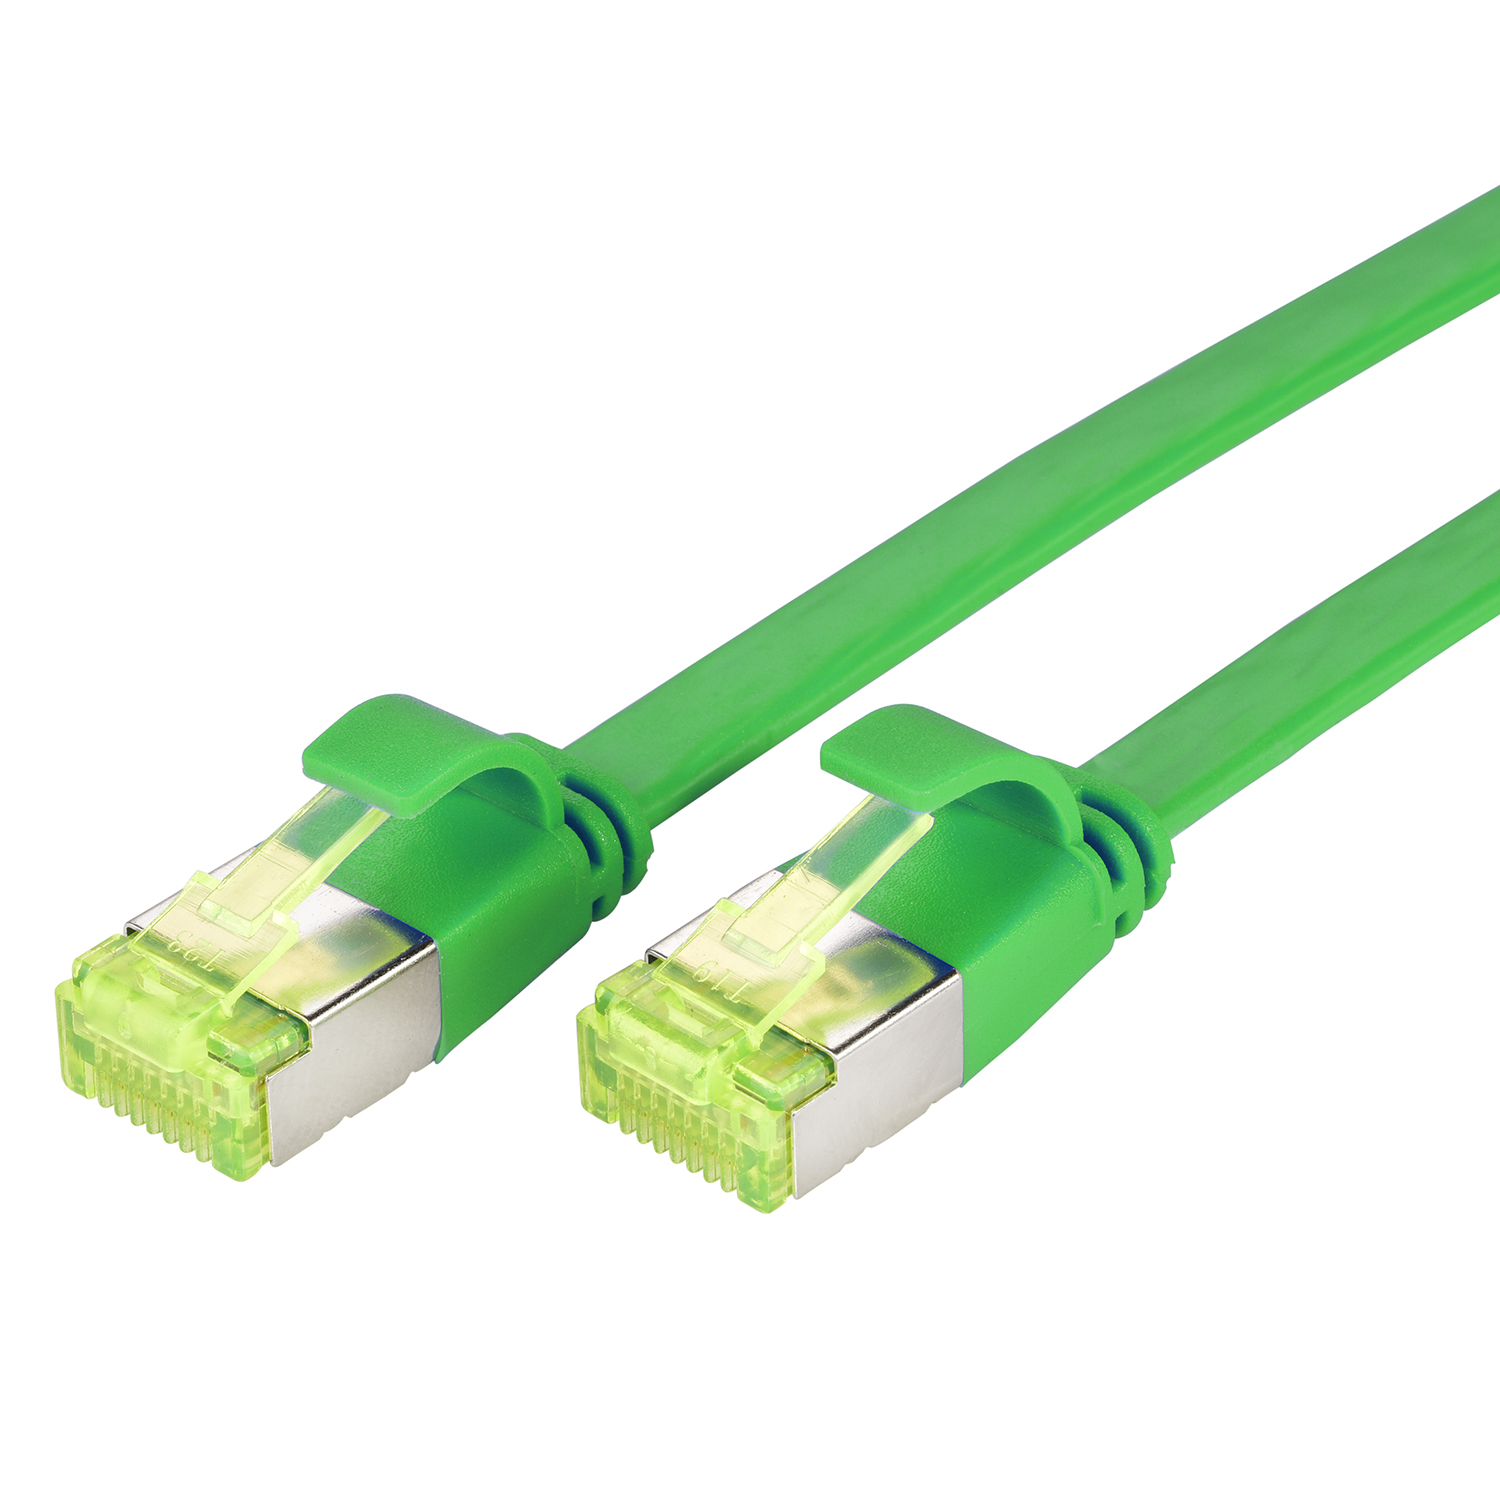 TPFNET 1m Patchkabel / Flachkabel 1 grün, Netzwerkkabel, GBit, 10 U/FTP m